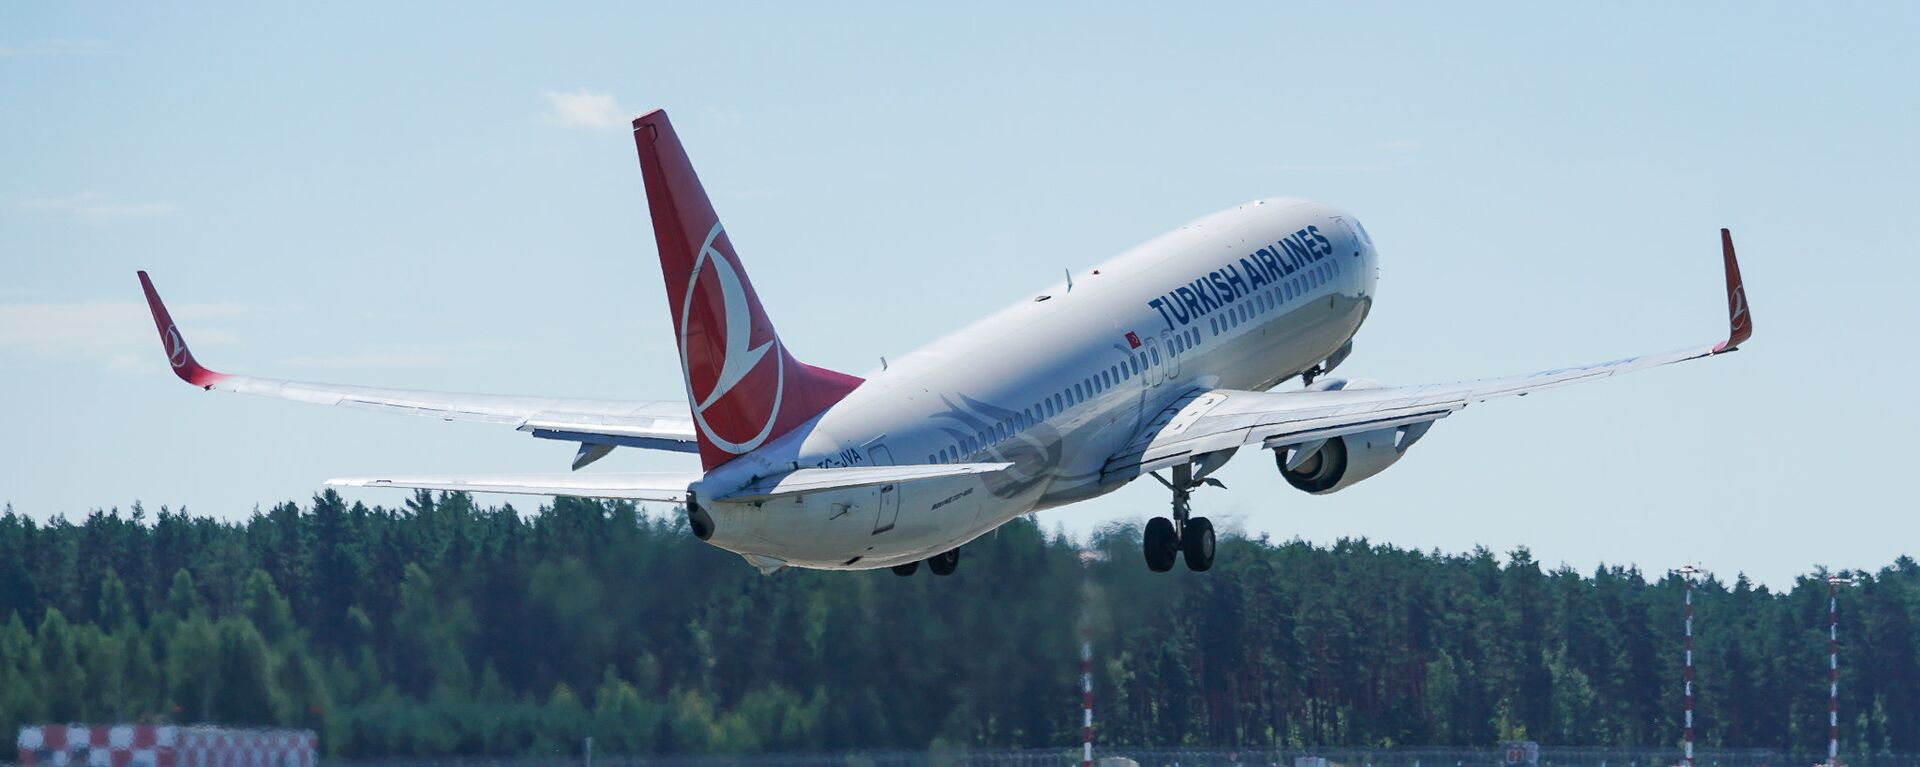 Самолет Boeing 737 авиакомпании Turkish Airlines взлетает из аэропорта Рига - Sputnik Latvija, 1920, 13.05.2021